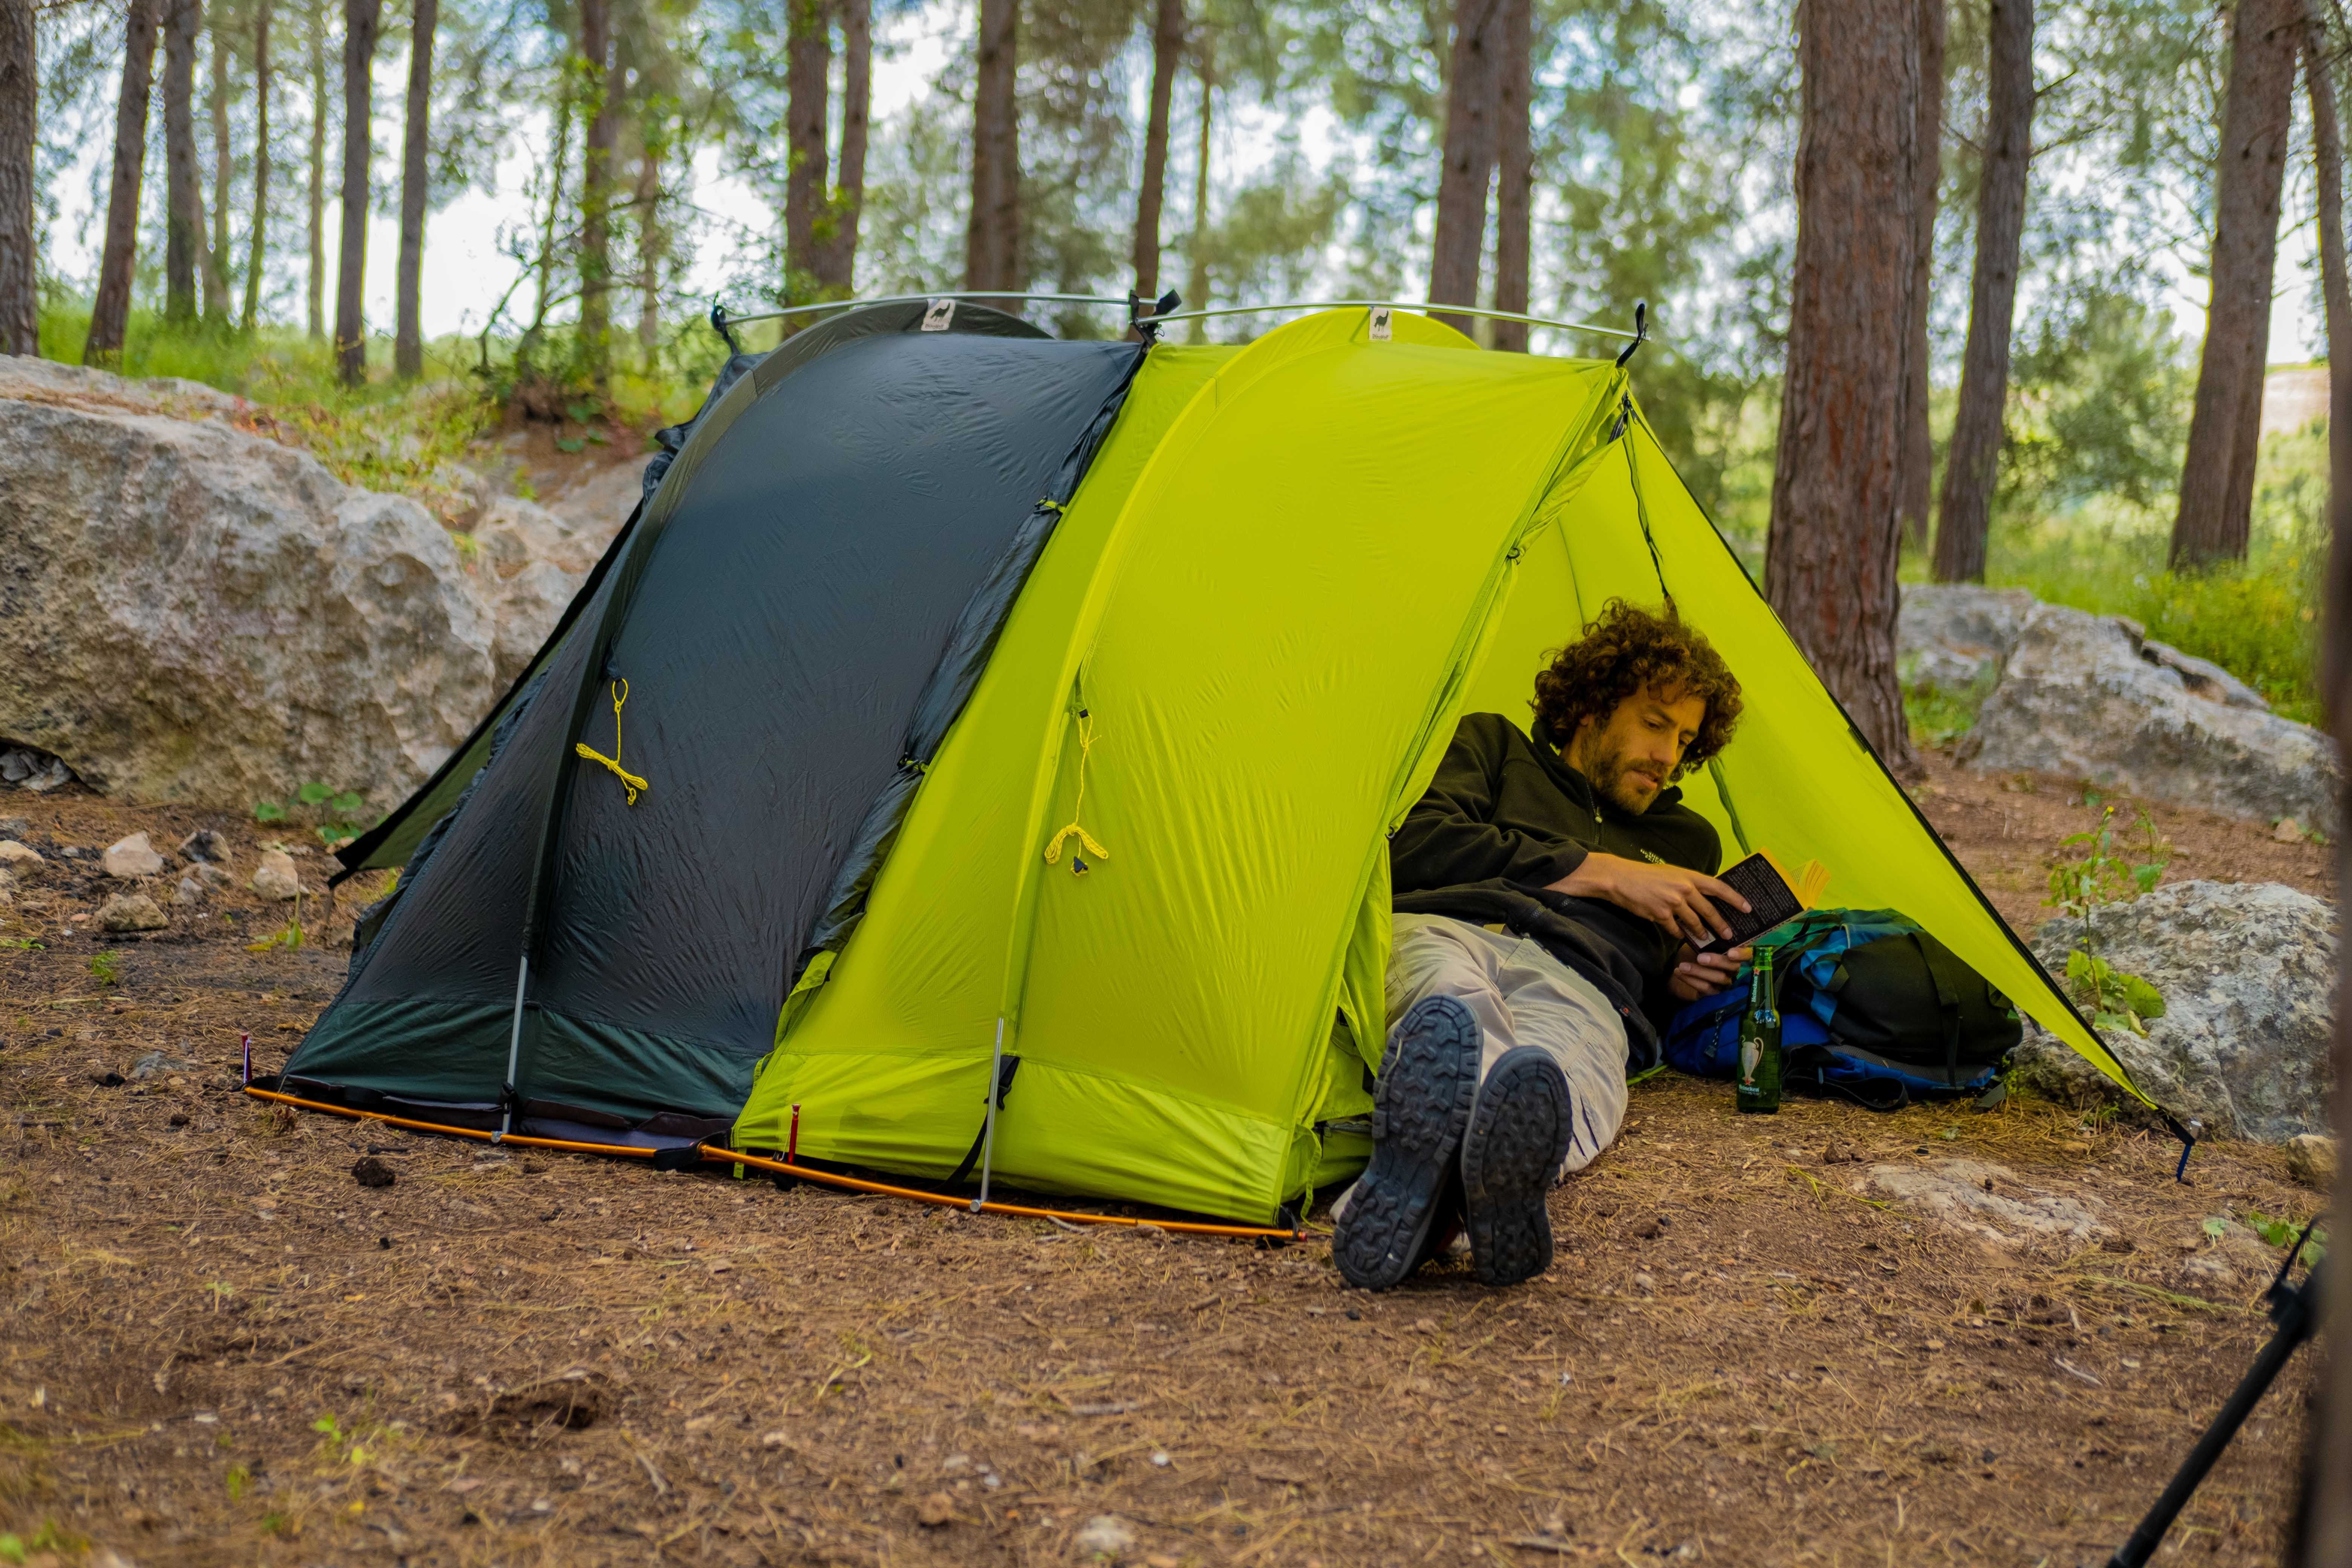 Camping men. “Modular Tent System” палатки. Спать в палатке. Палатки для кемпинга. Ночевка в палатке.